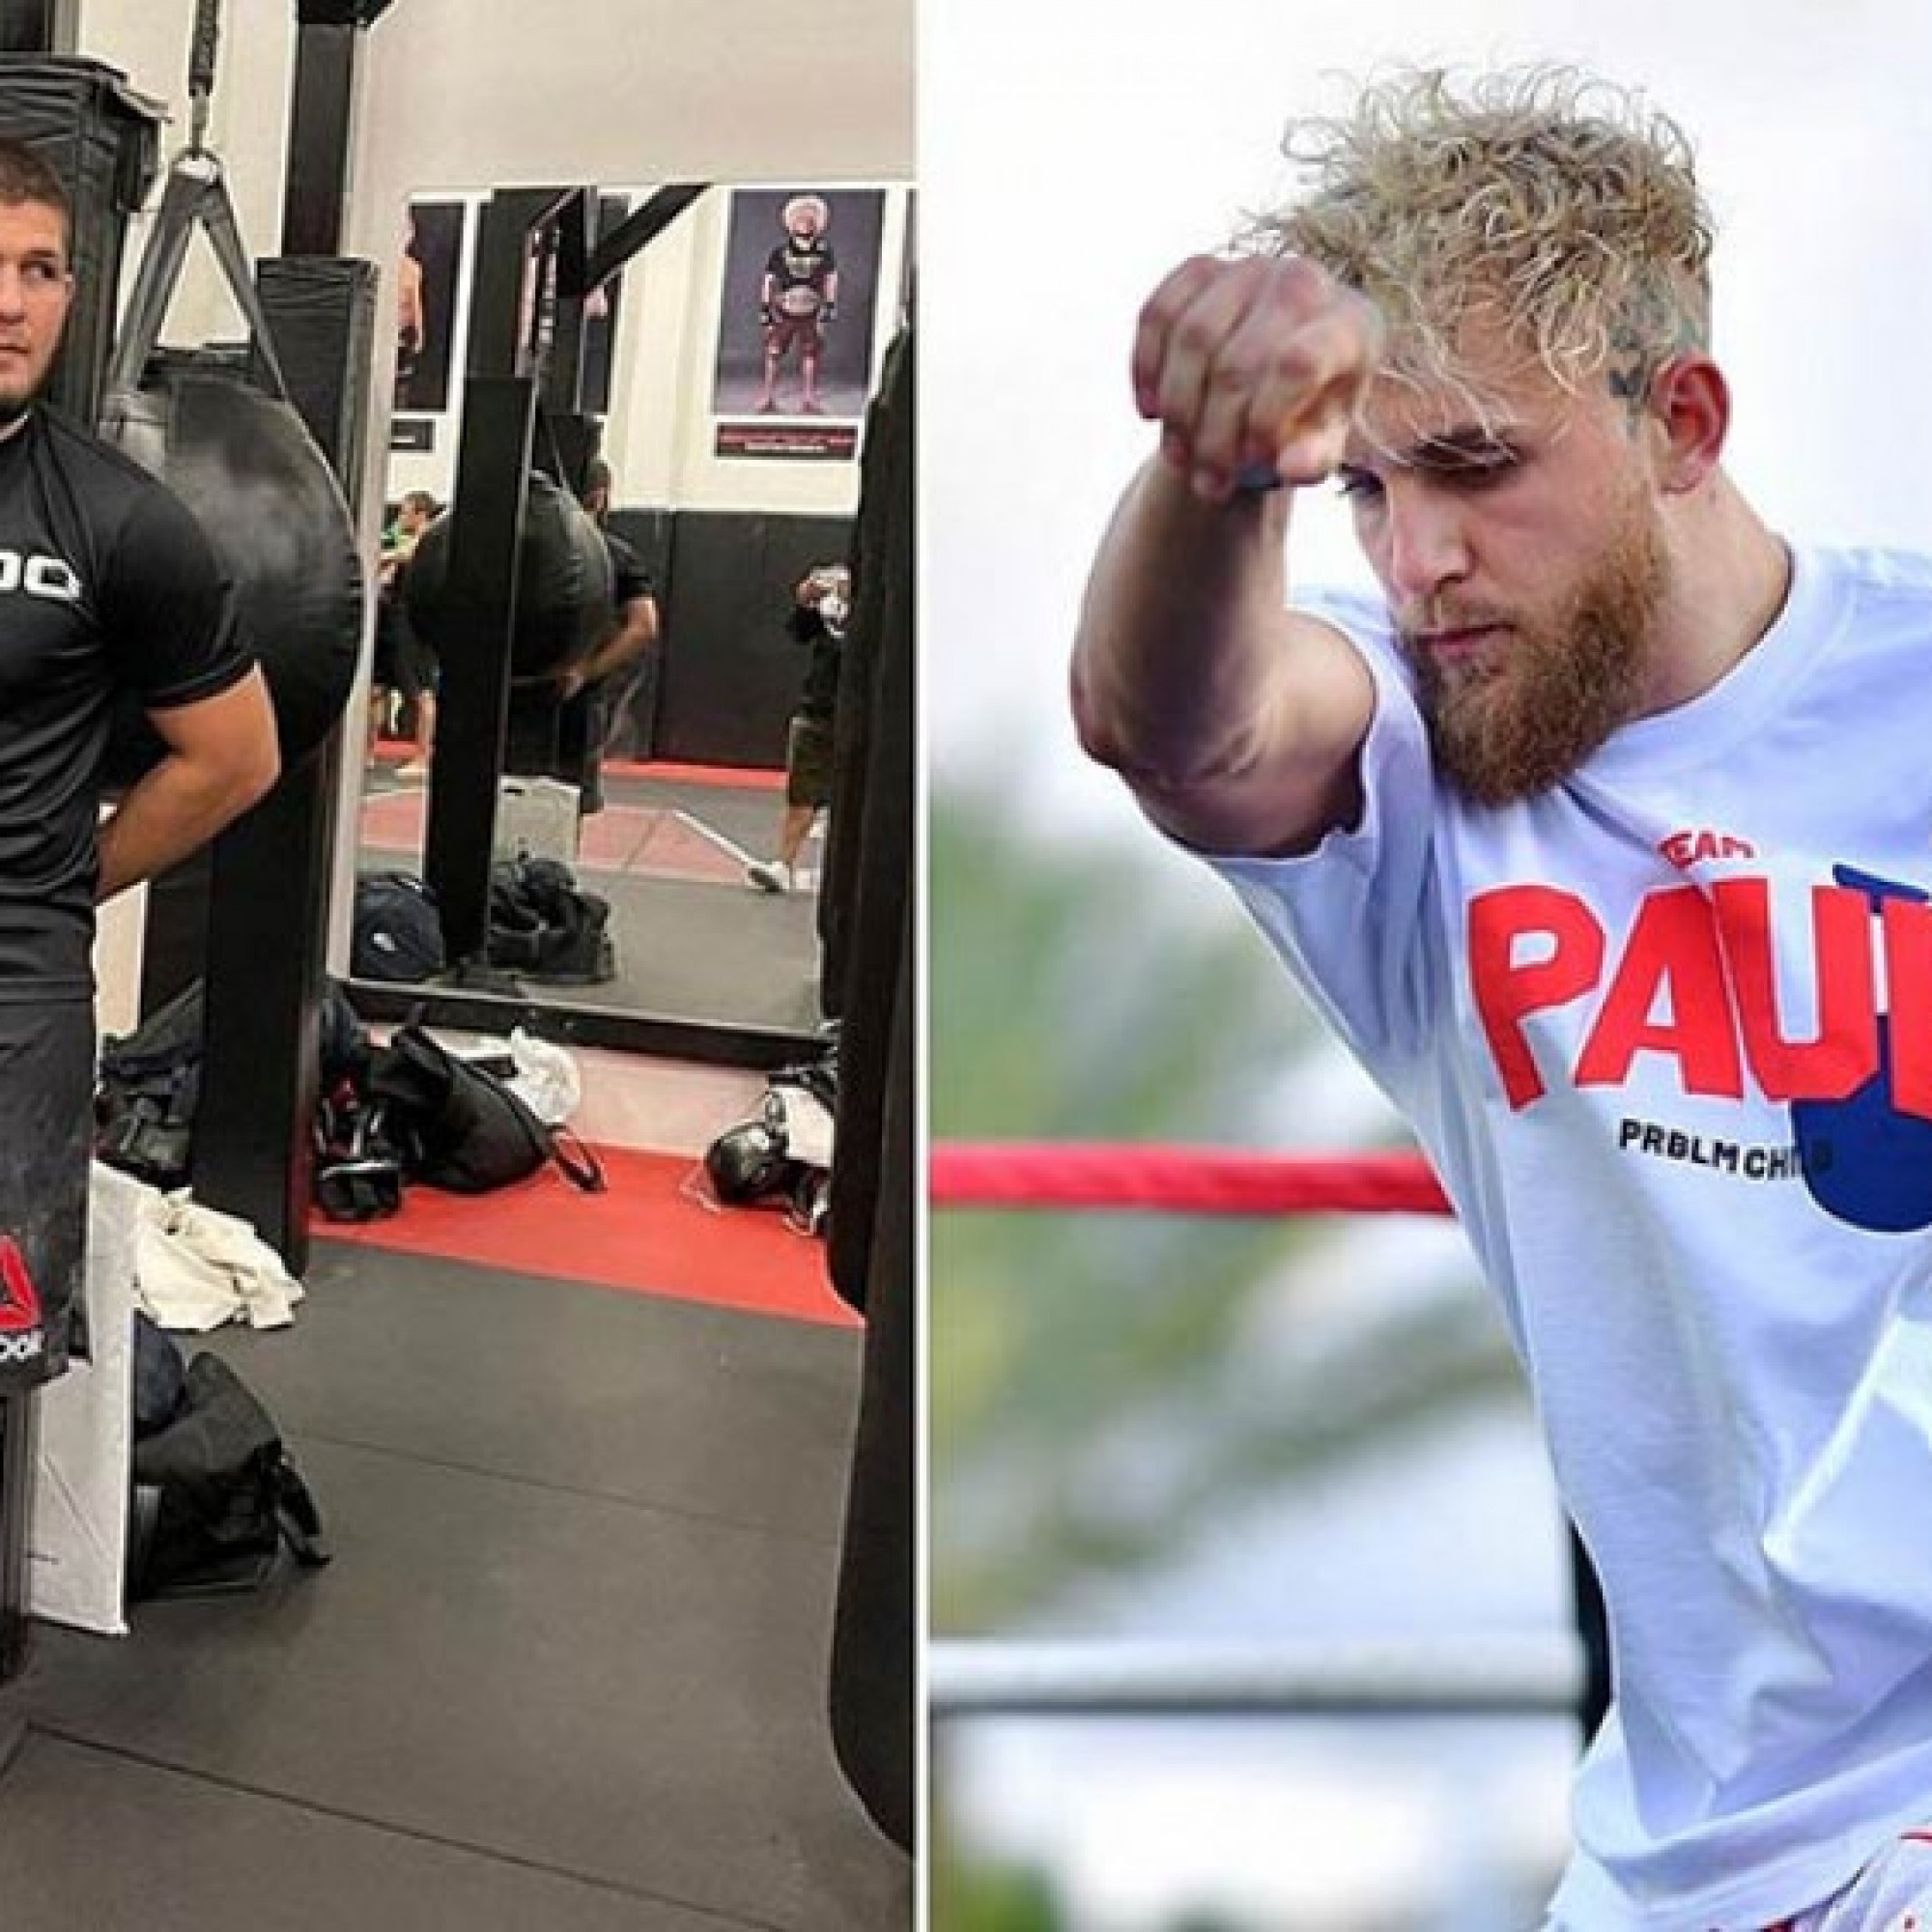  - Nóng nhất thể thao tối 23/1: Khabib mời Jake Paul đến công ty MMA của mình